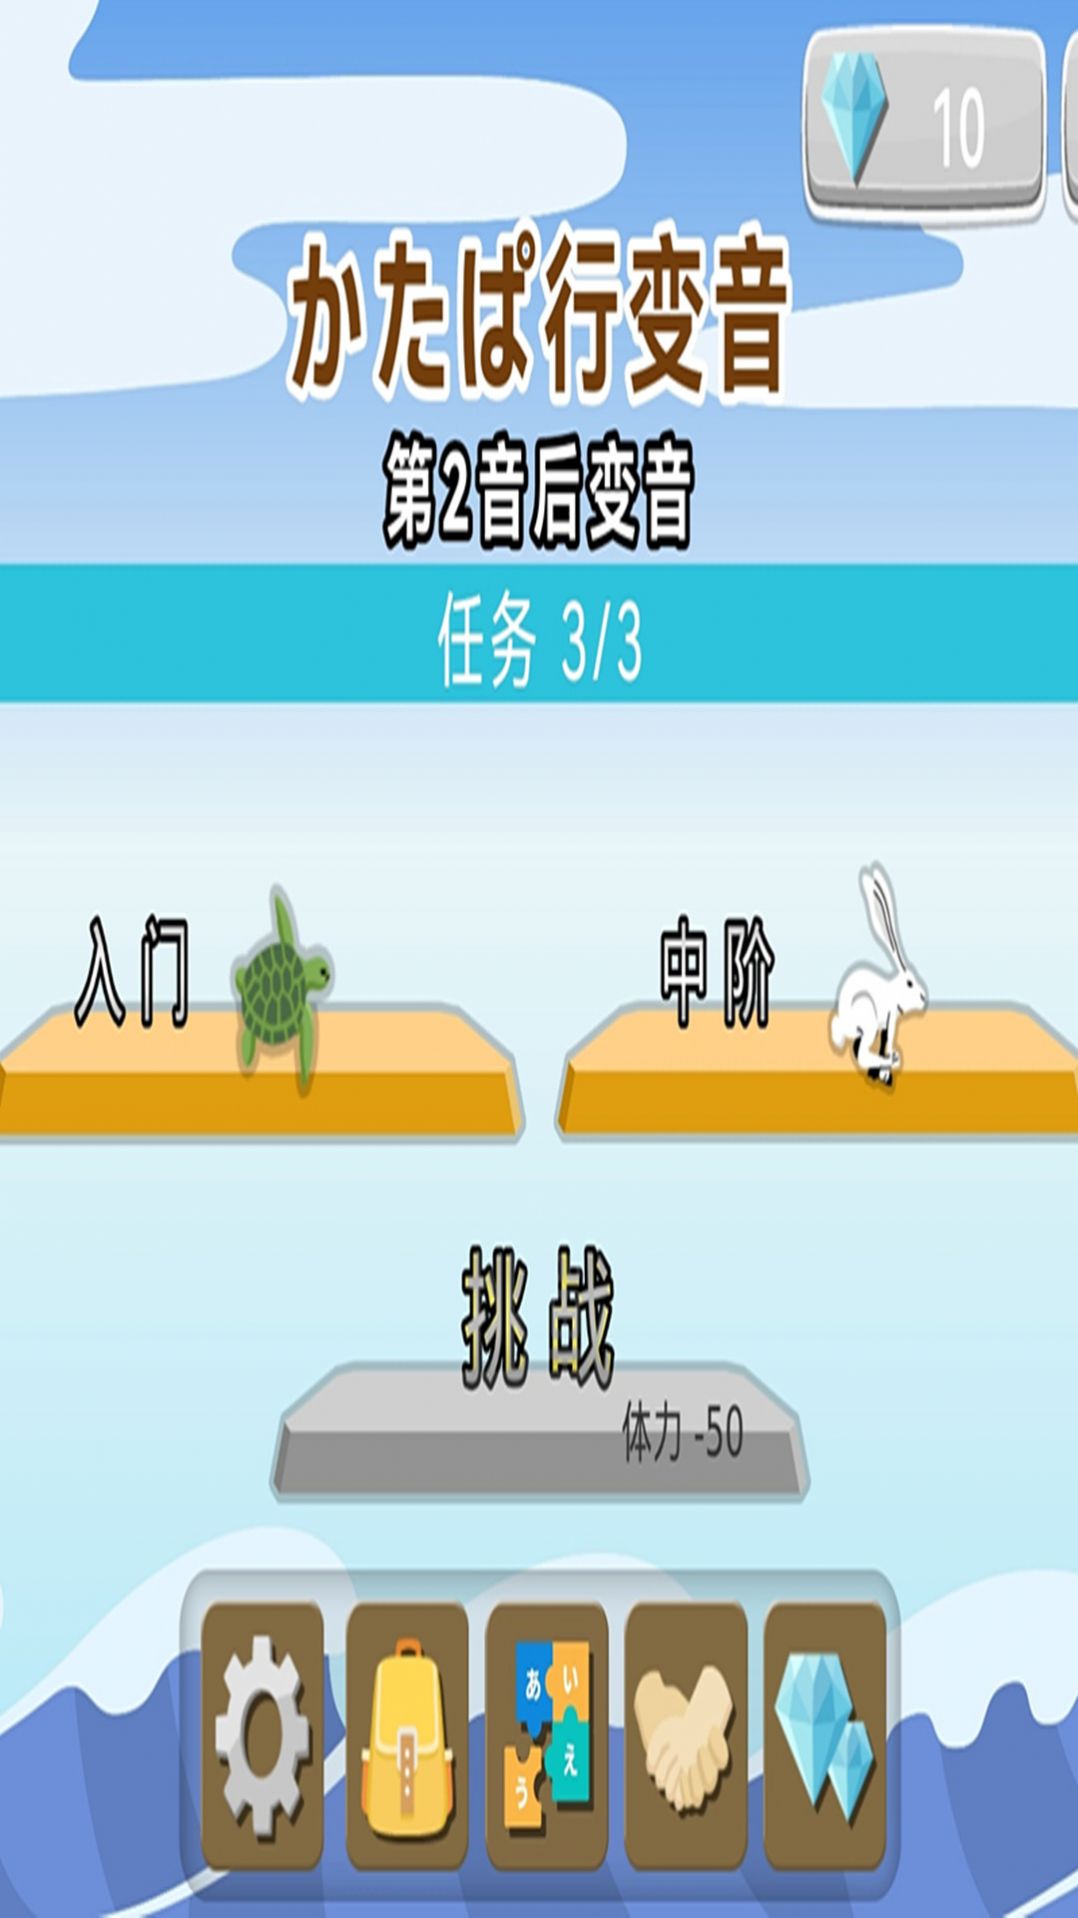 日语拼音熊注音版app官方下载图片1